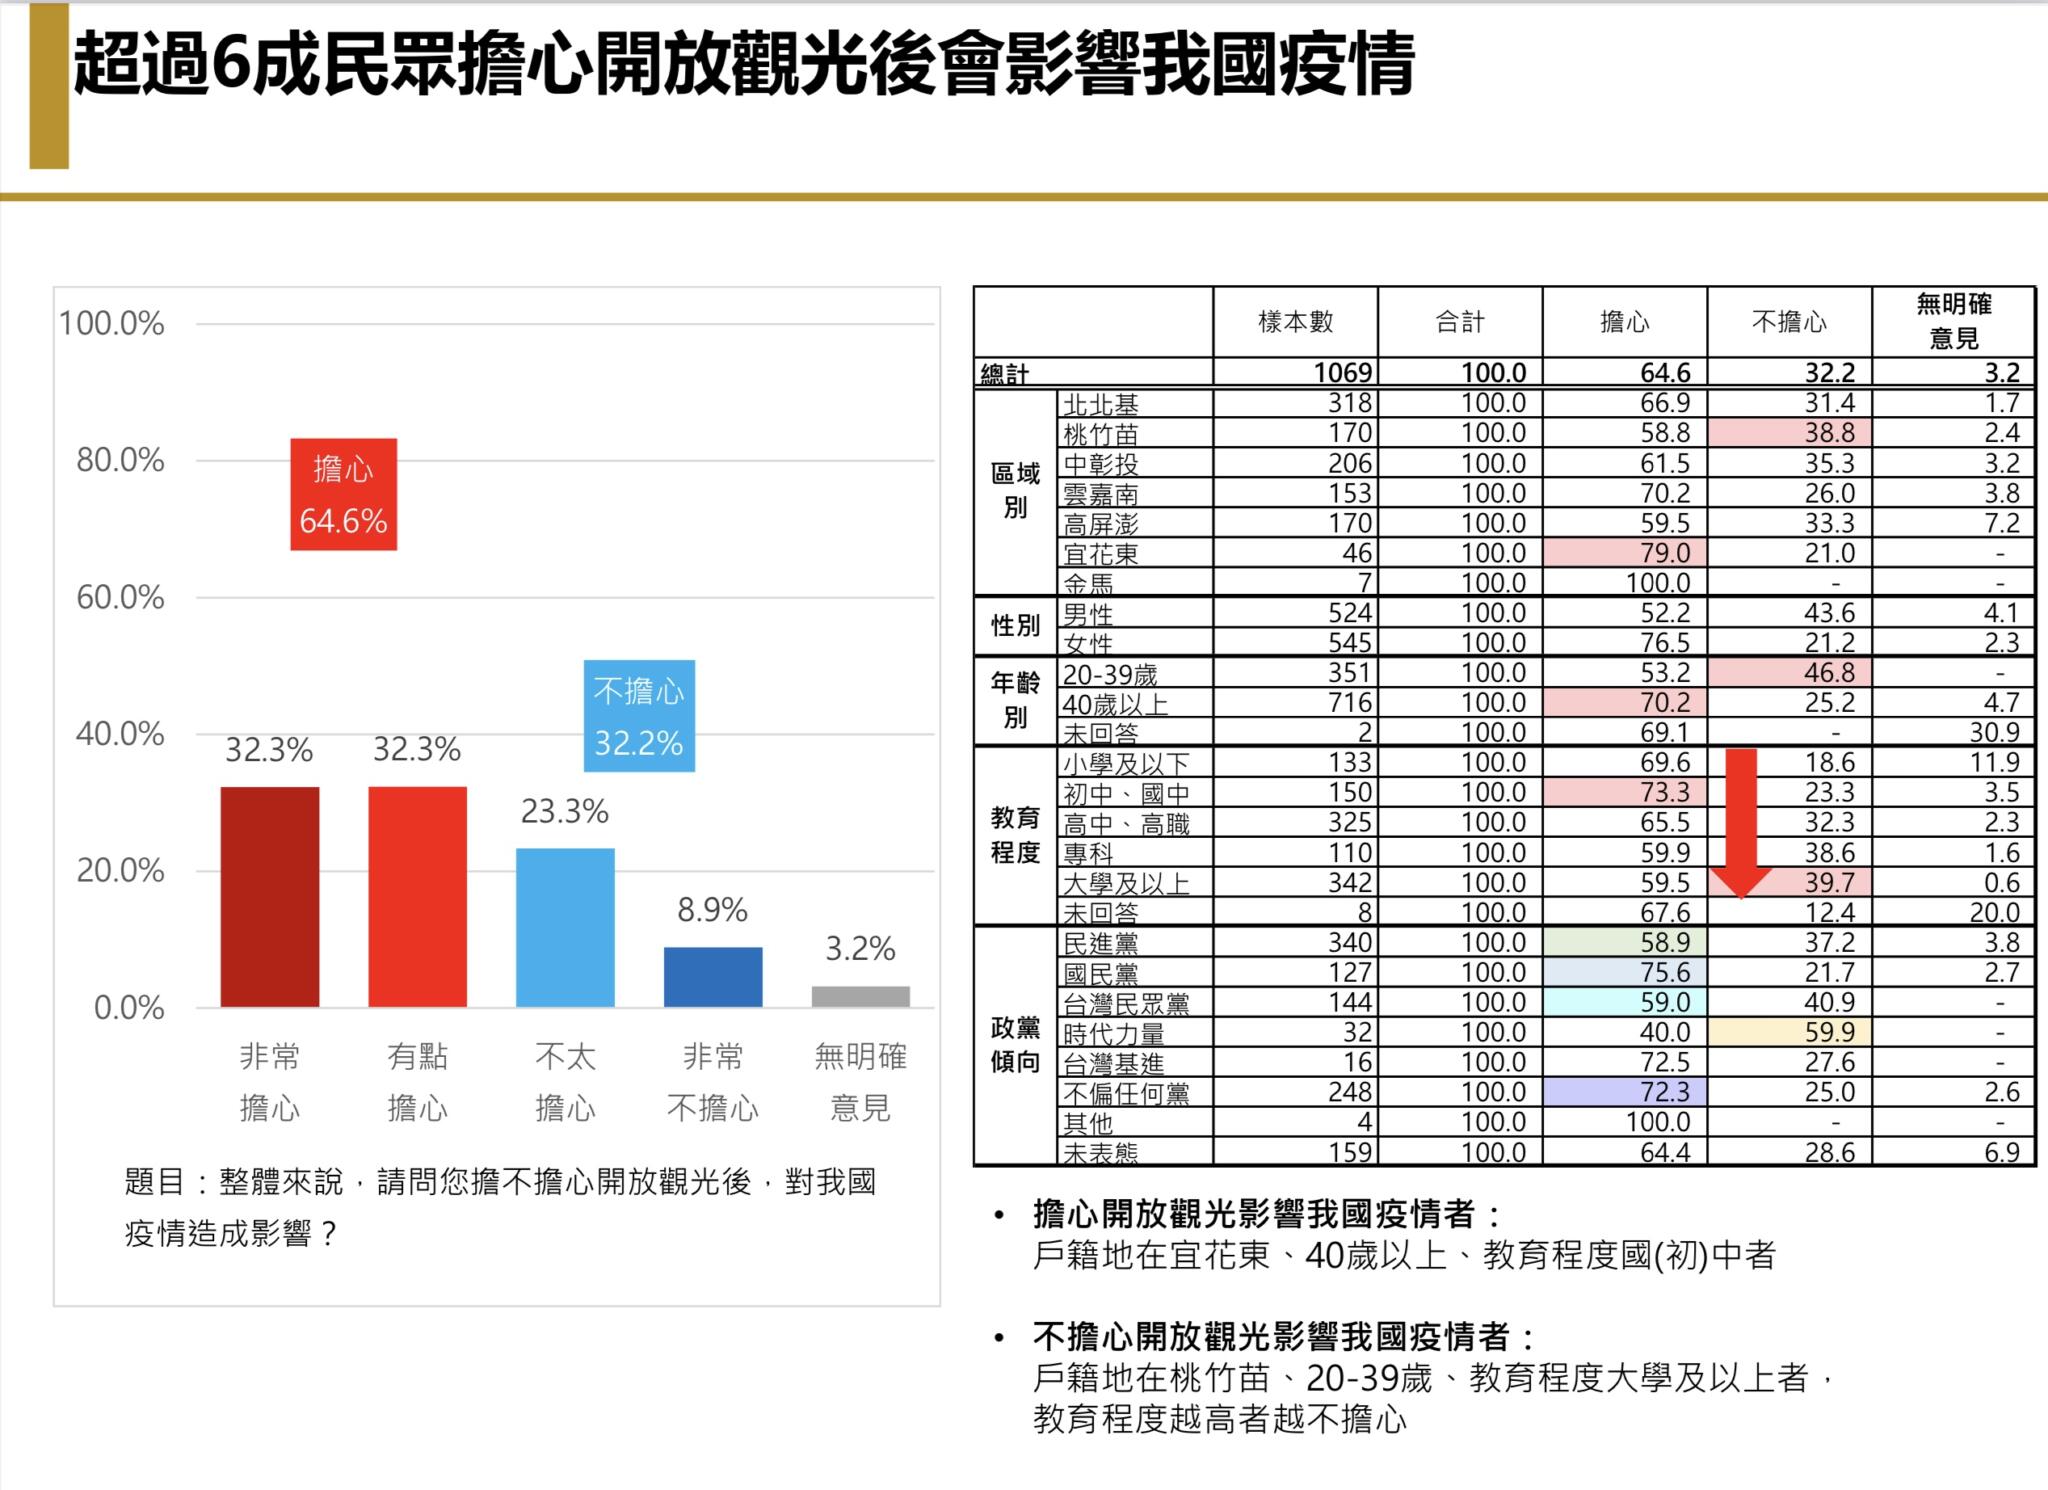  【匯流民調6月定期調查4-2】台灣民眾「悶壞了」 若開放海外旅遊 有三成有出國打算 其中以去日本比例最高 